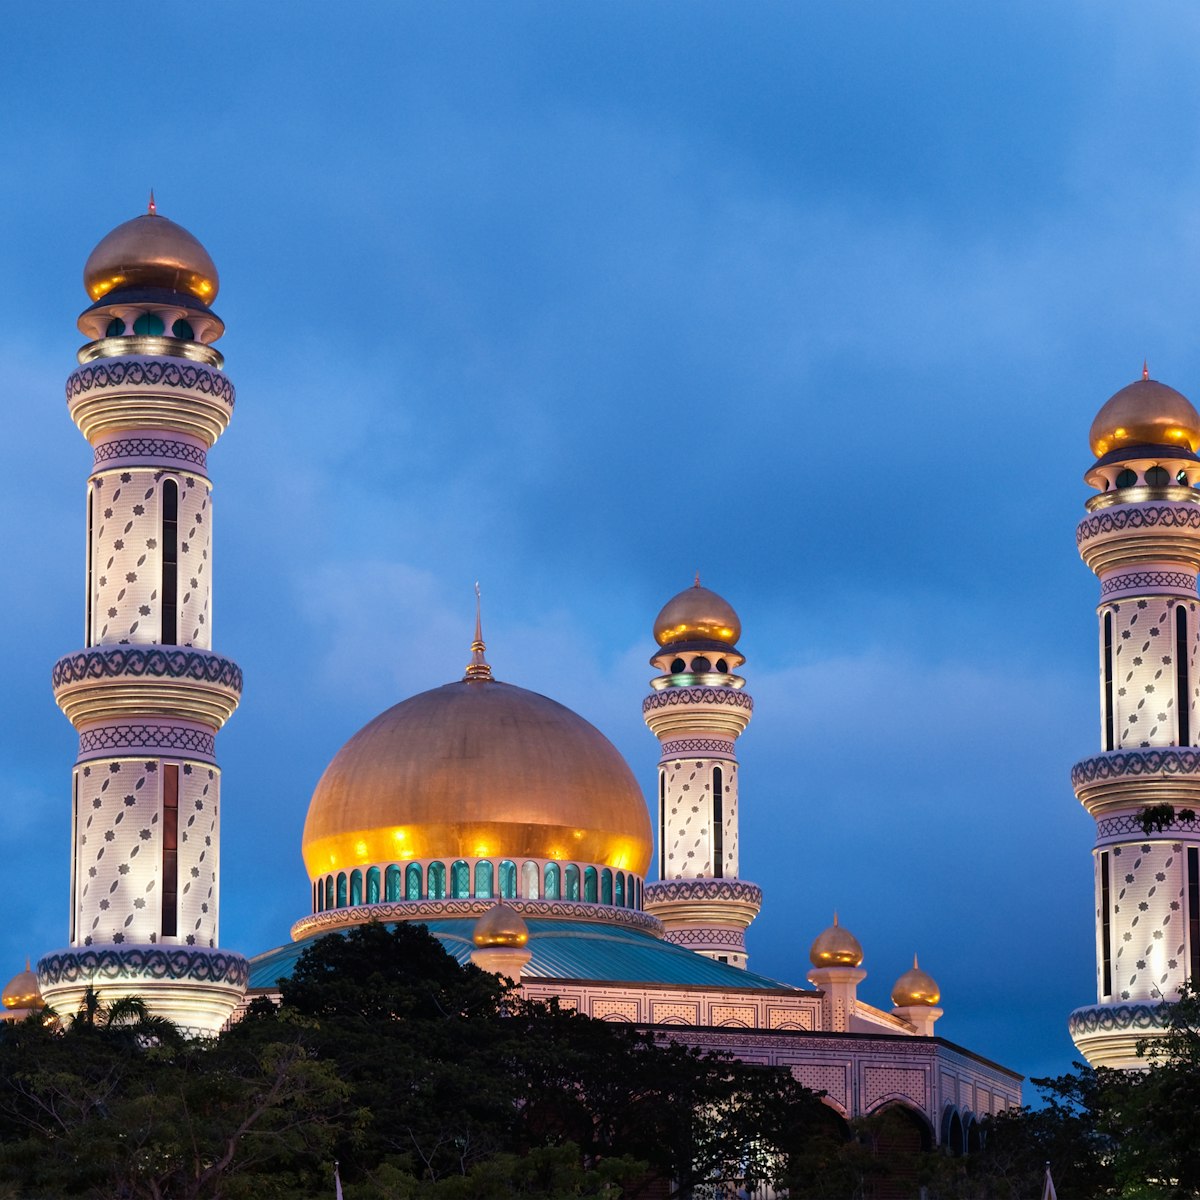 Bolkiah Mosque in Bandar Seri Behawan, Brunei, at night.